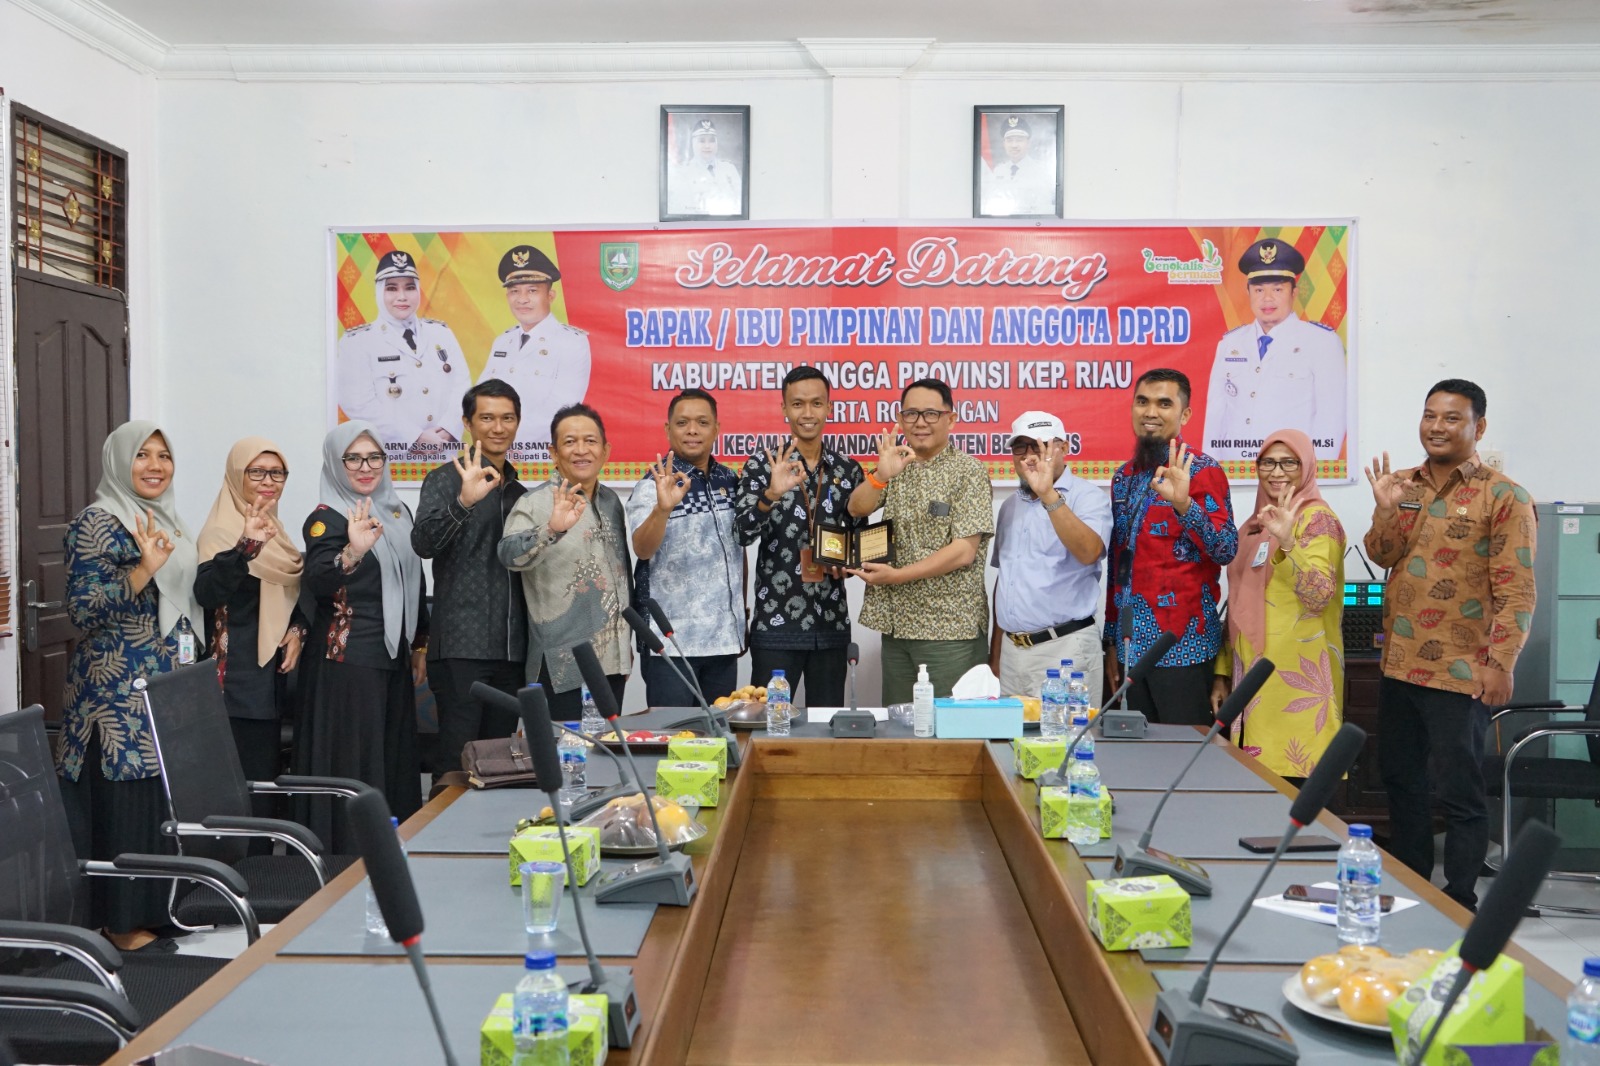 Studi Banding, Anggota DPRD Kabupaten Lingga Provinsi Kepri Kunjungi Kecamatan Mandau